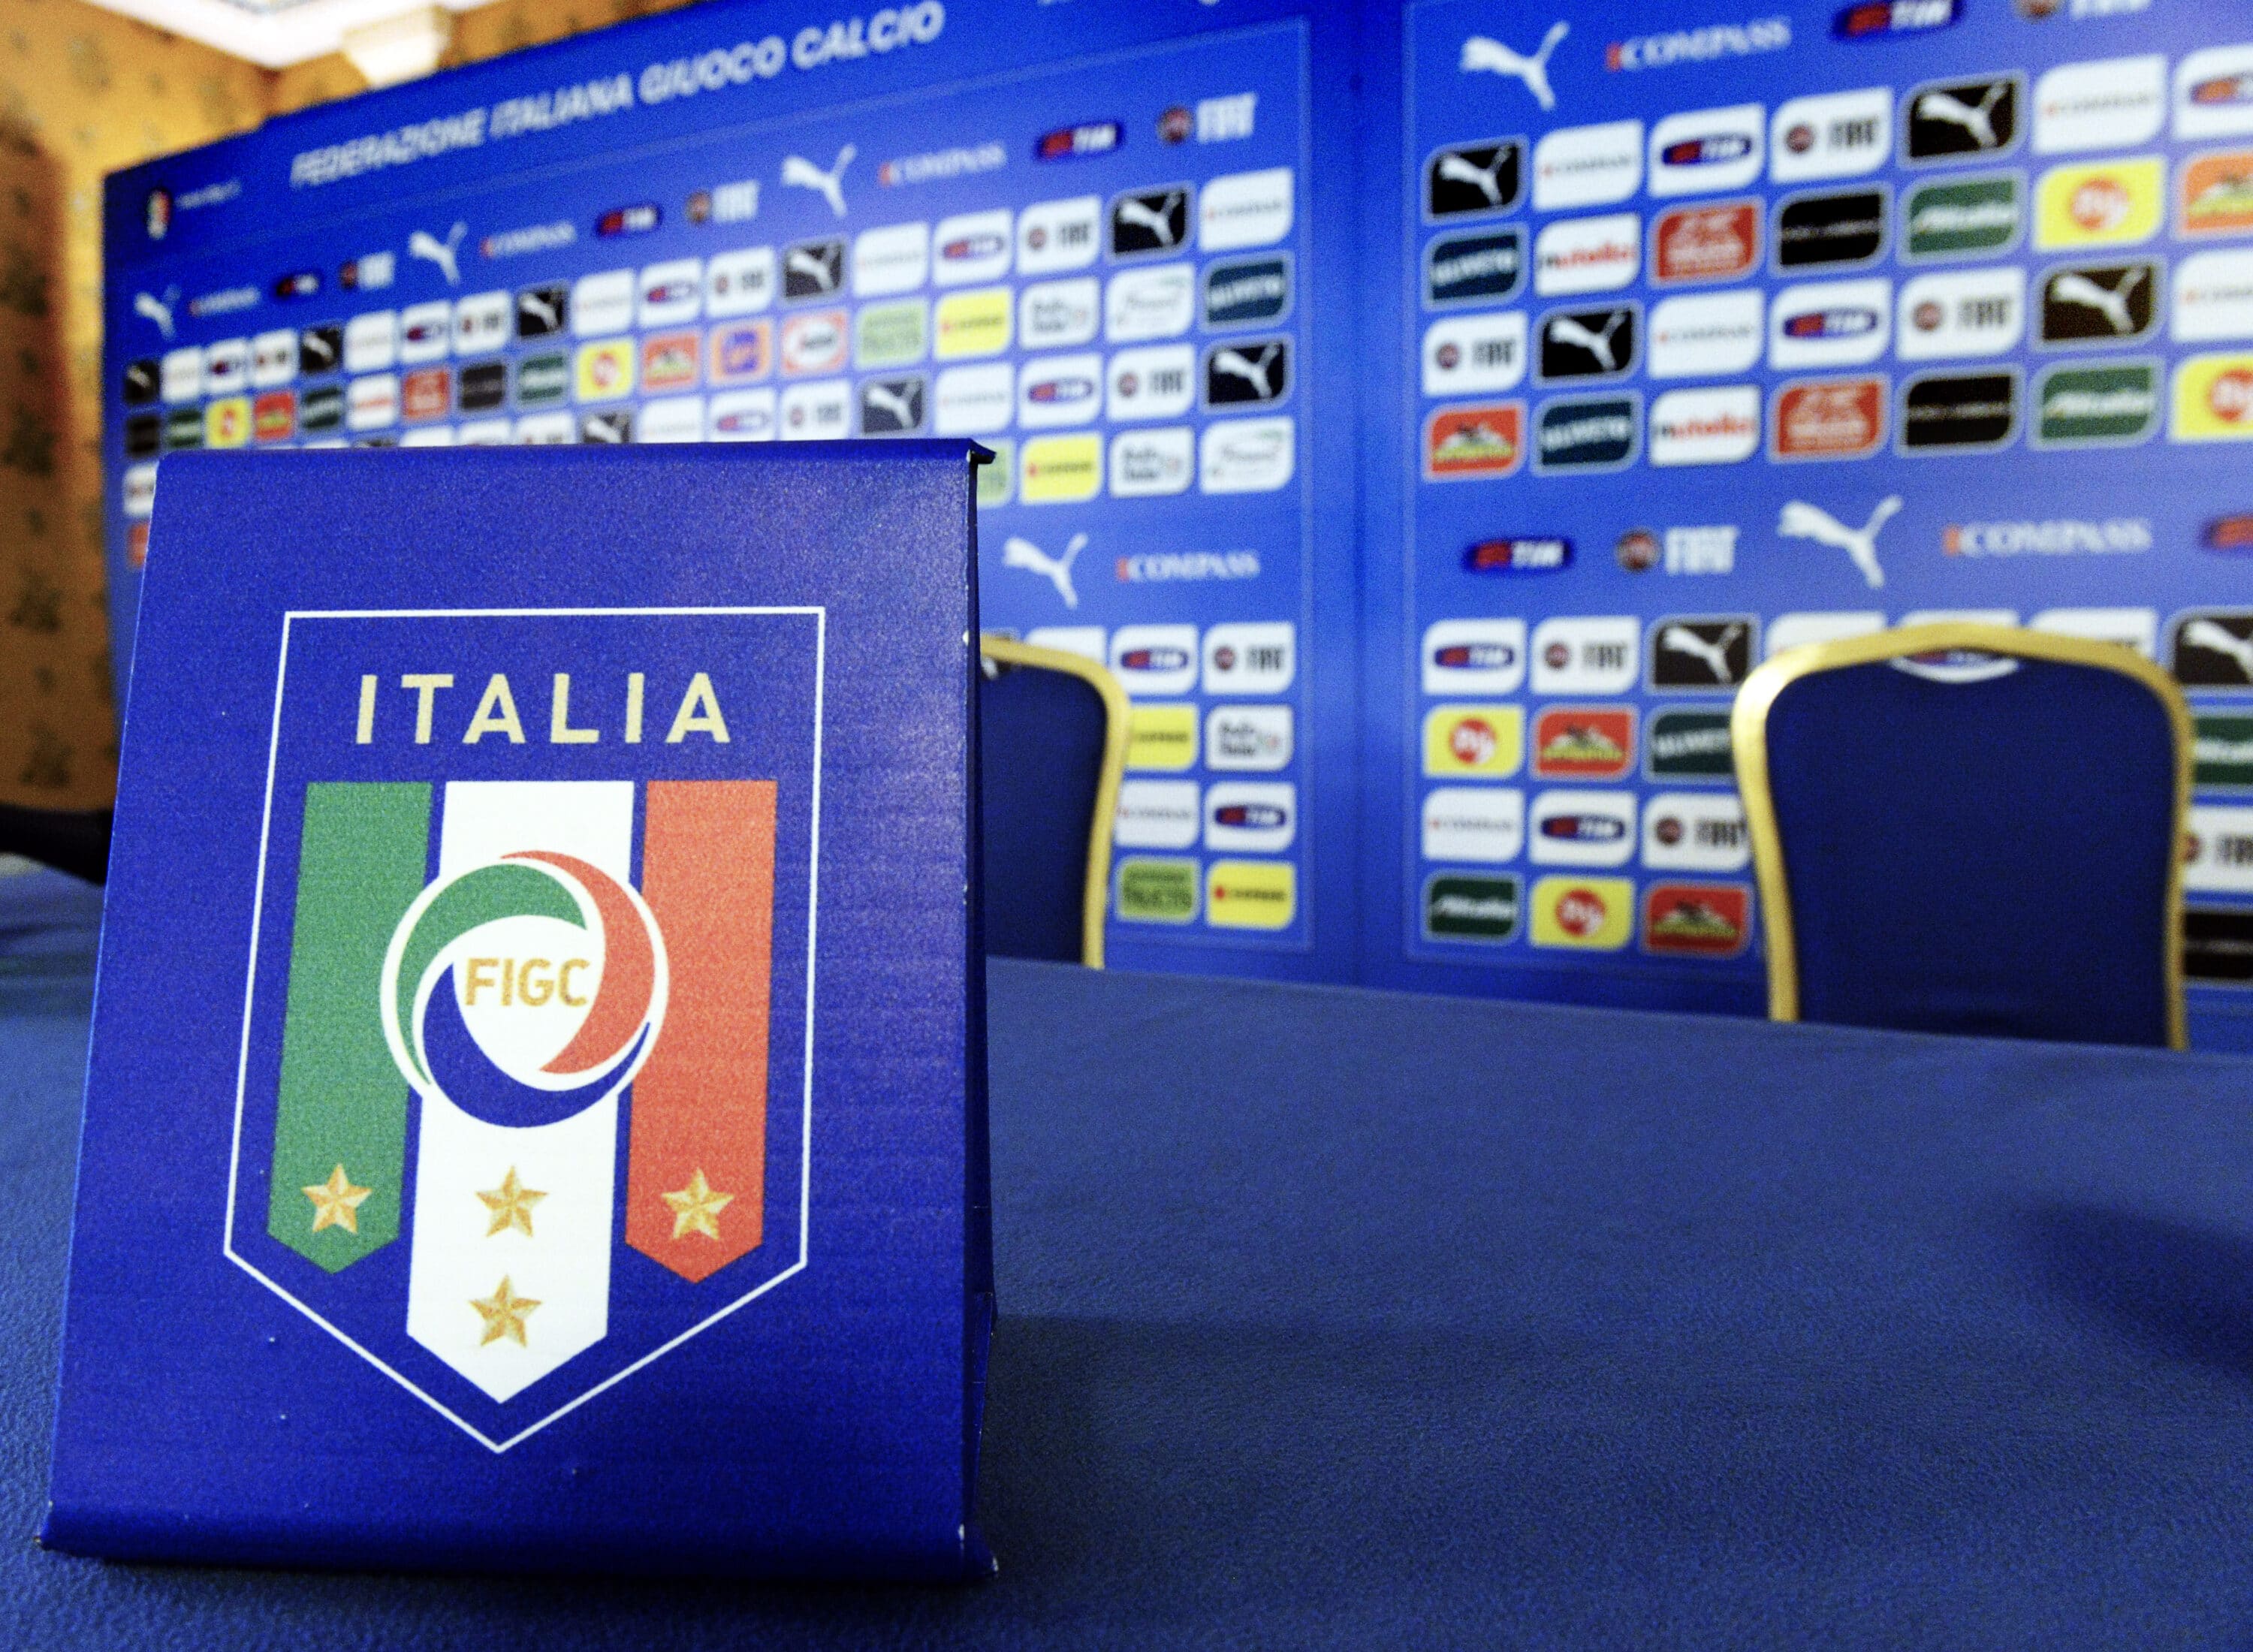 Al calcio italiano non ne va bene una: dall’Antitrust multa da oltre 4 milioni di euro per la Figc